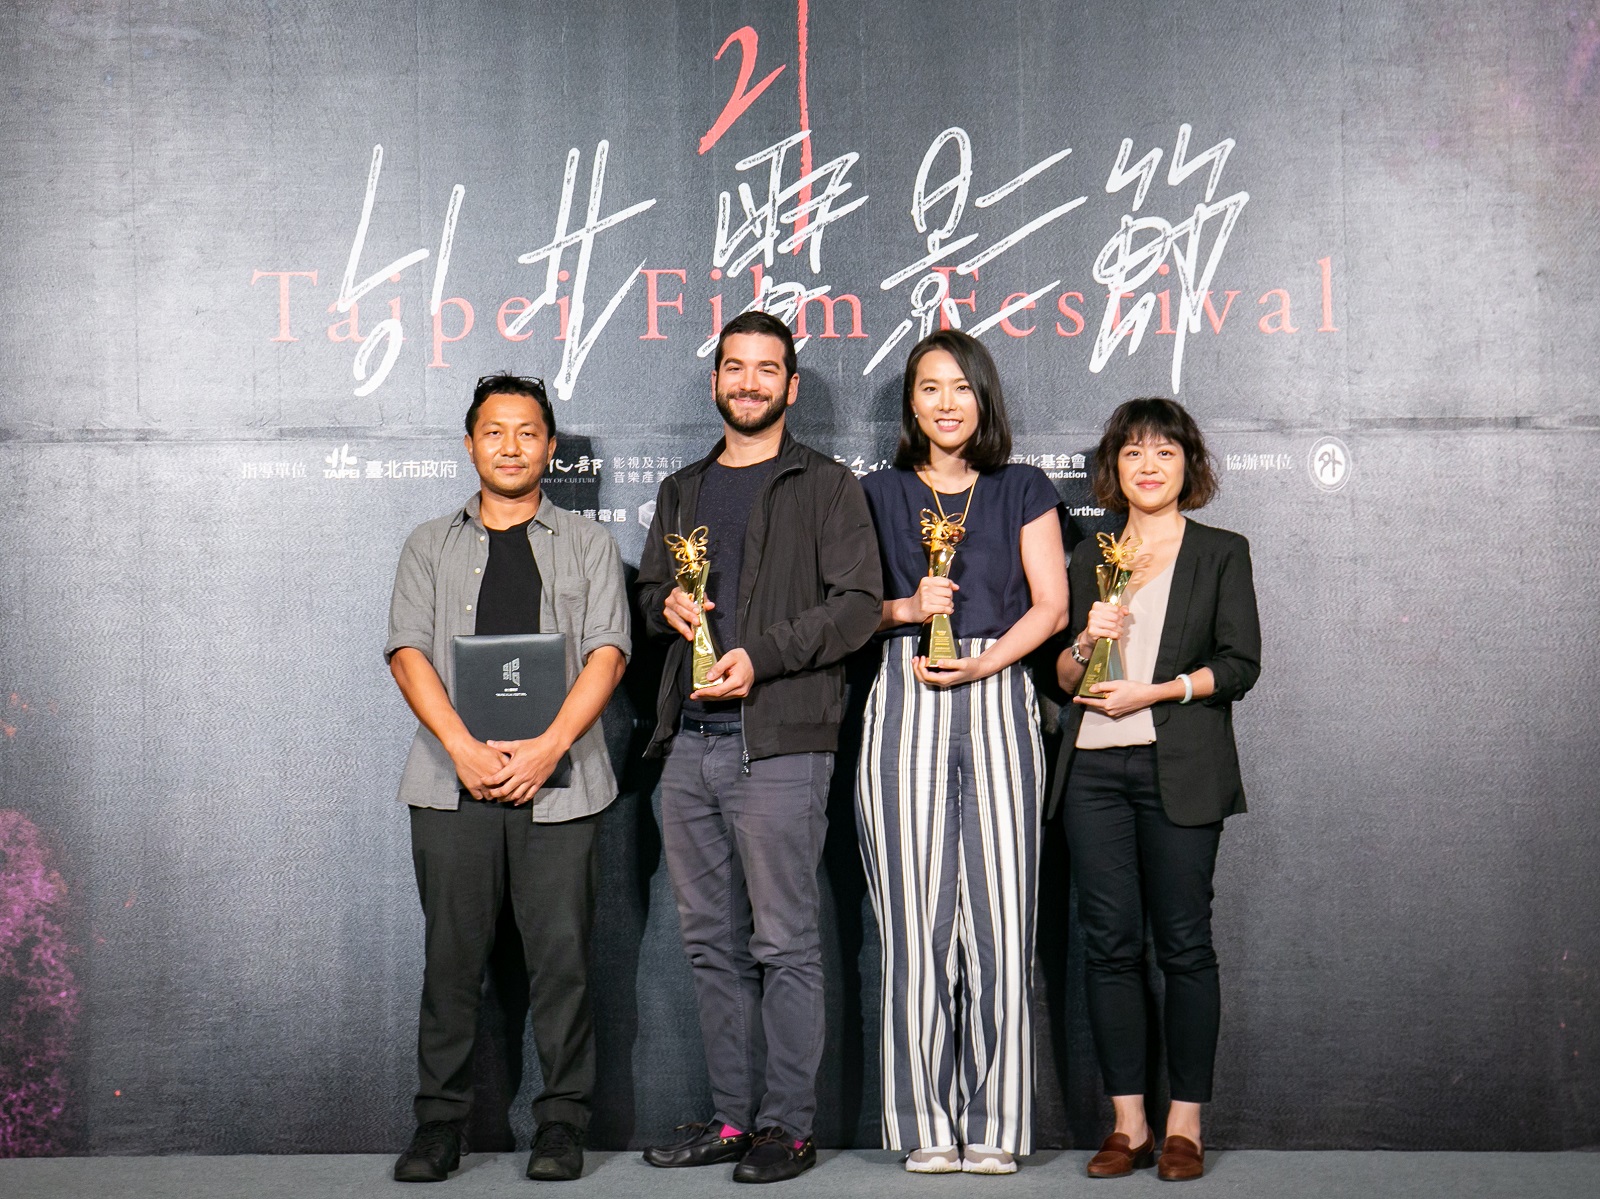 第22屆台北電影節雙競賽1月15日全面啟動 2020台北電影獎、國際新導演競賽報名開跑